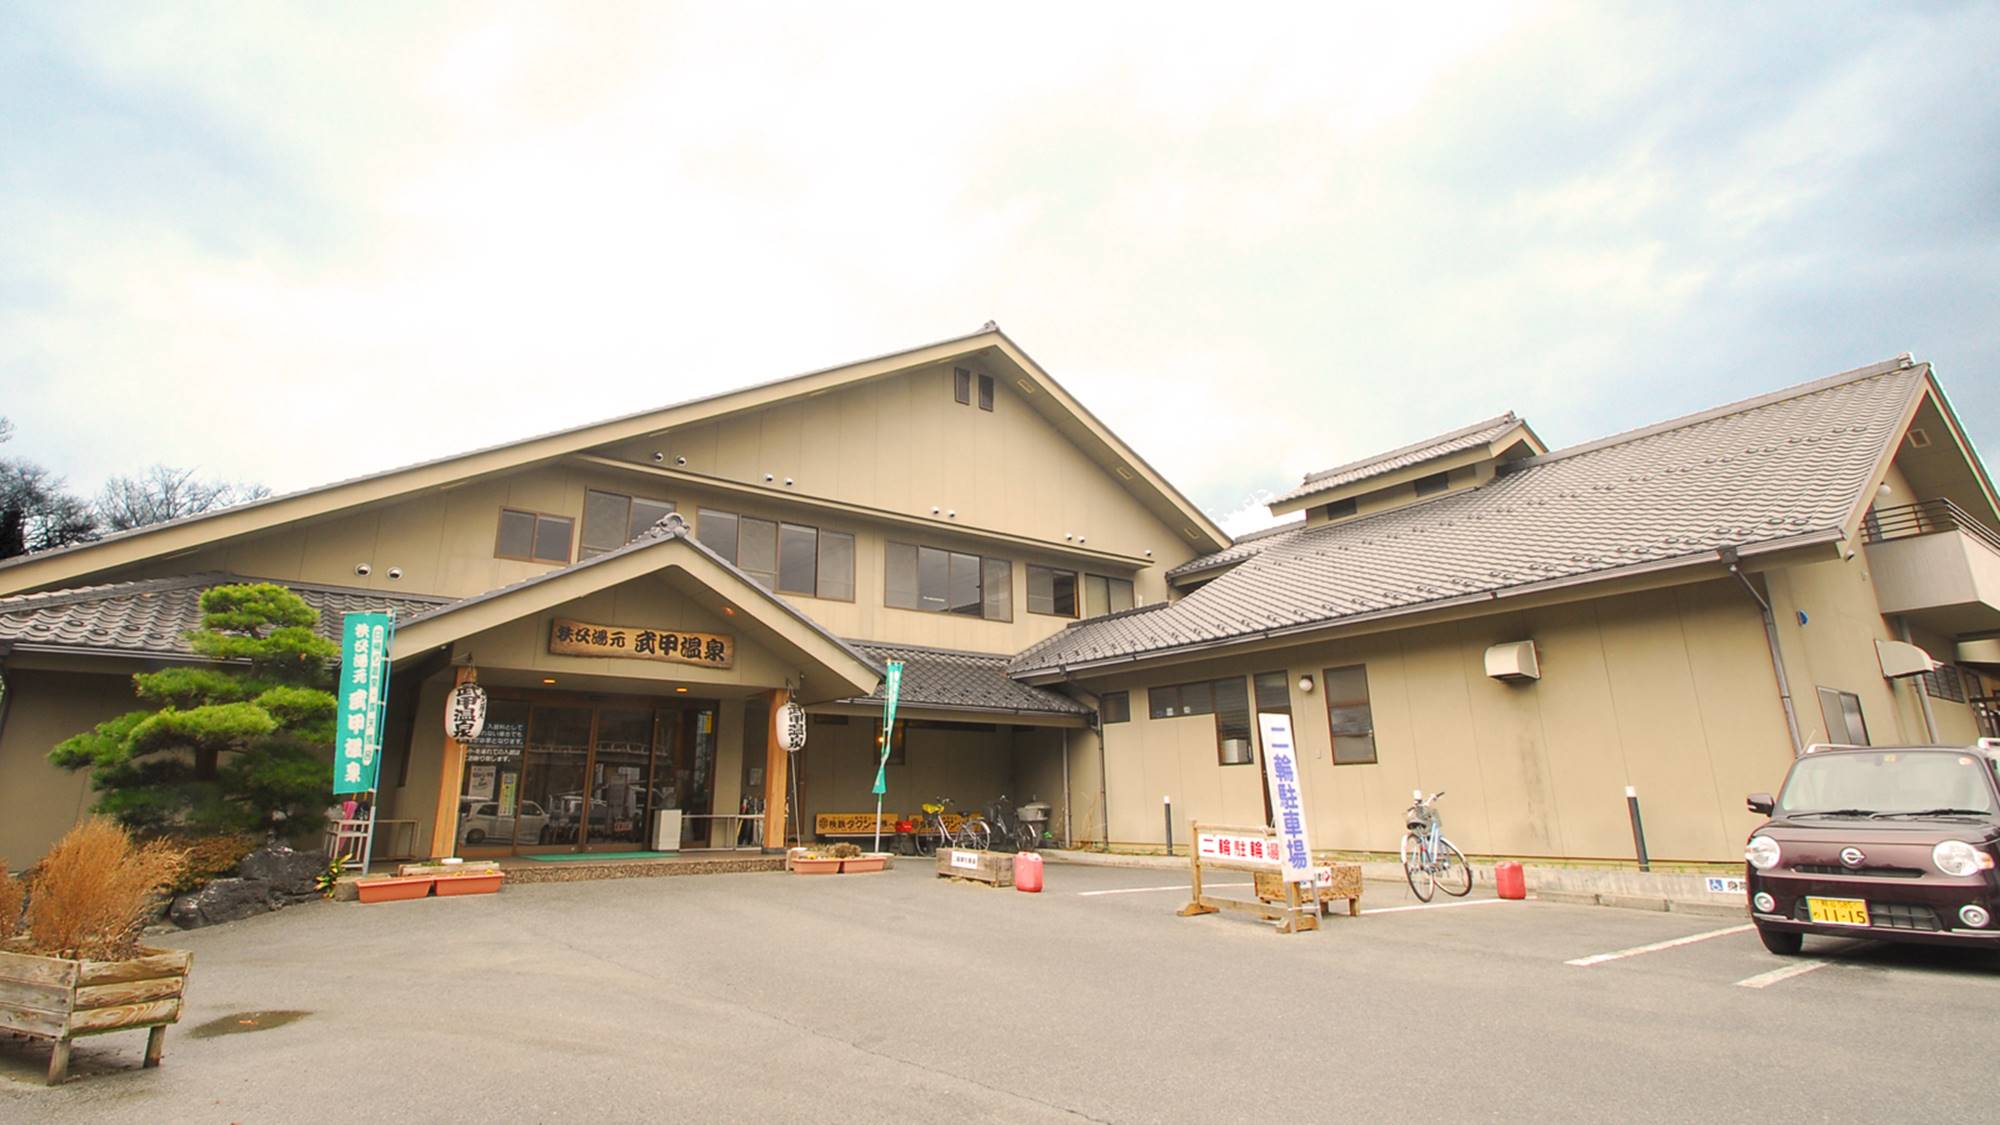 出張ついてでに埼玉県の秩父温泉へいきたいです。1泊10000円以下で安いところを希望です。